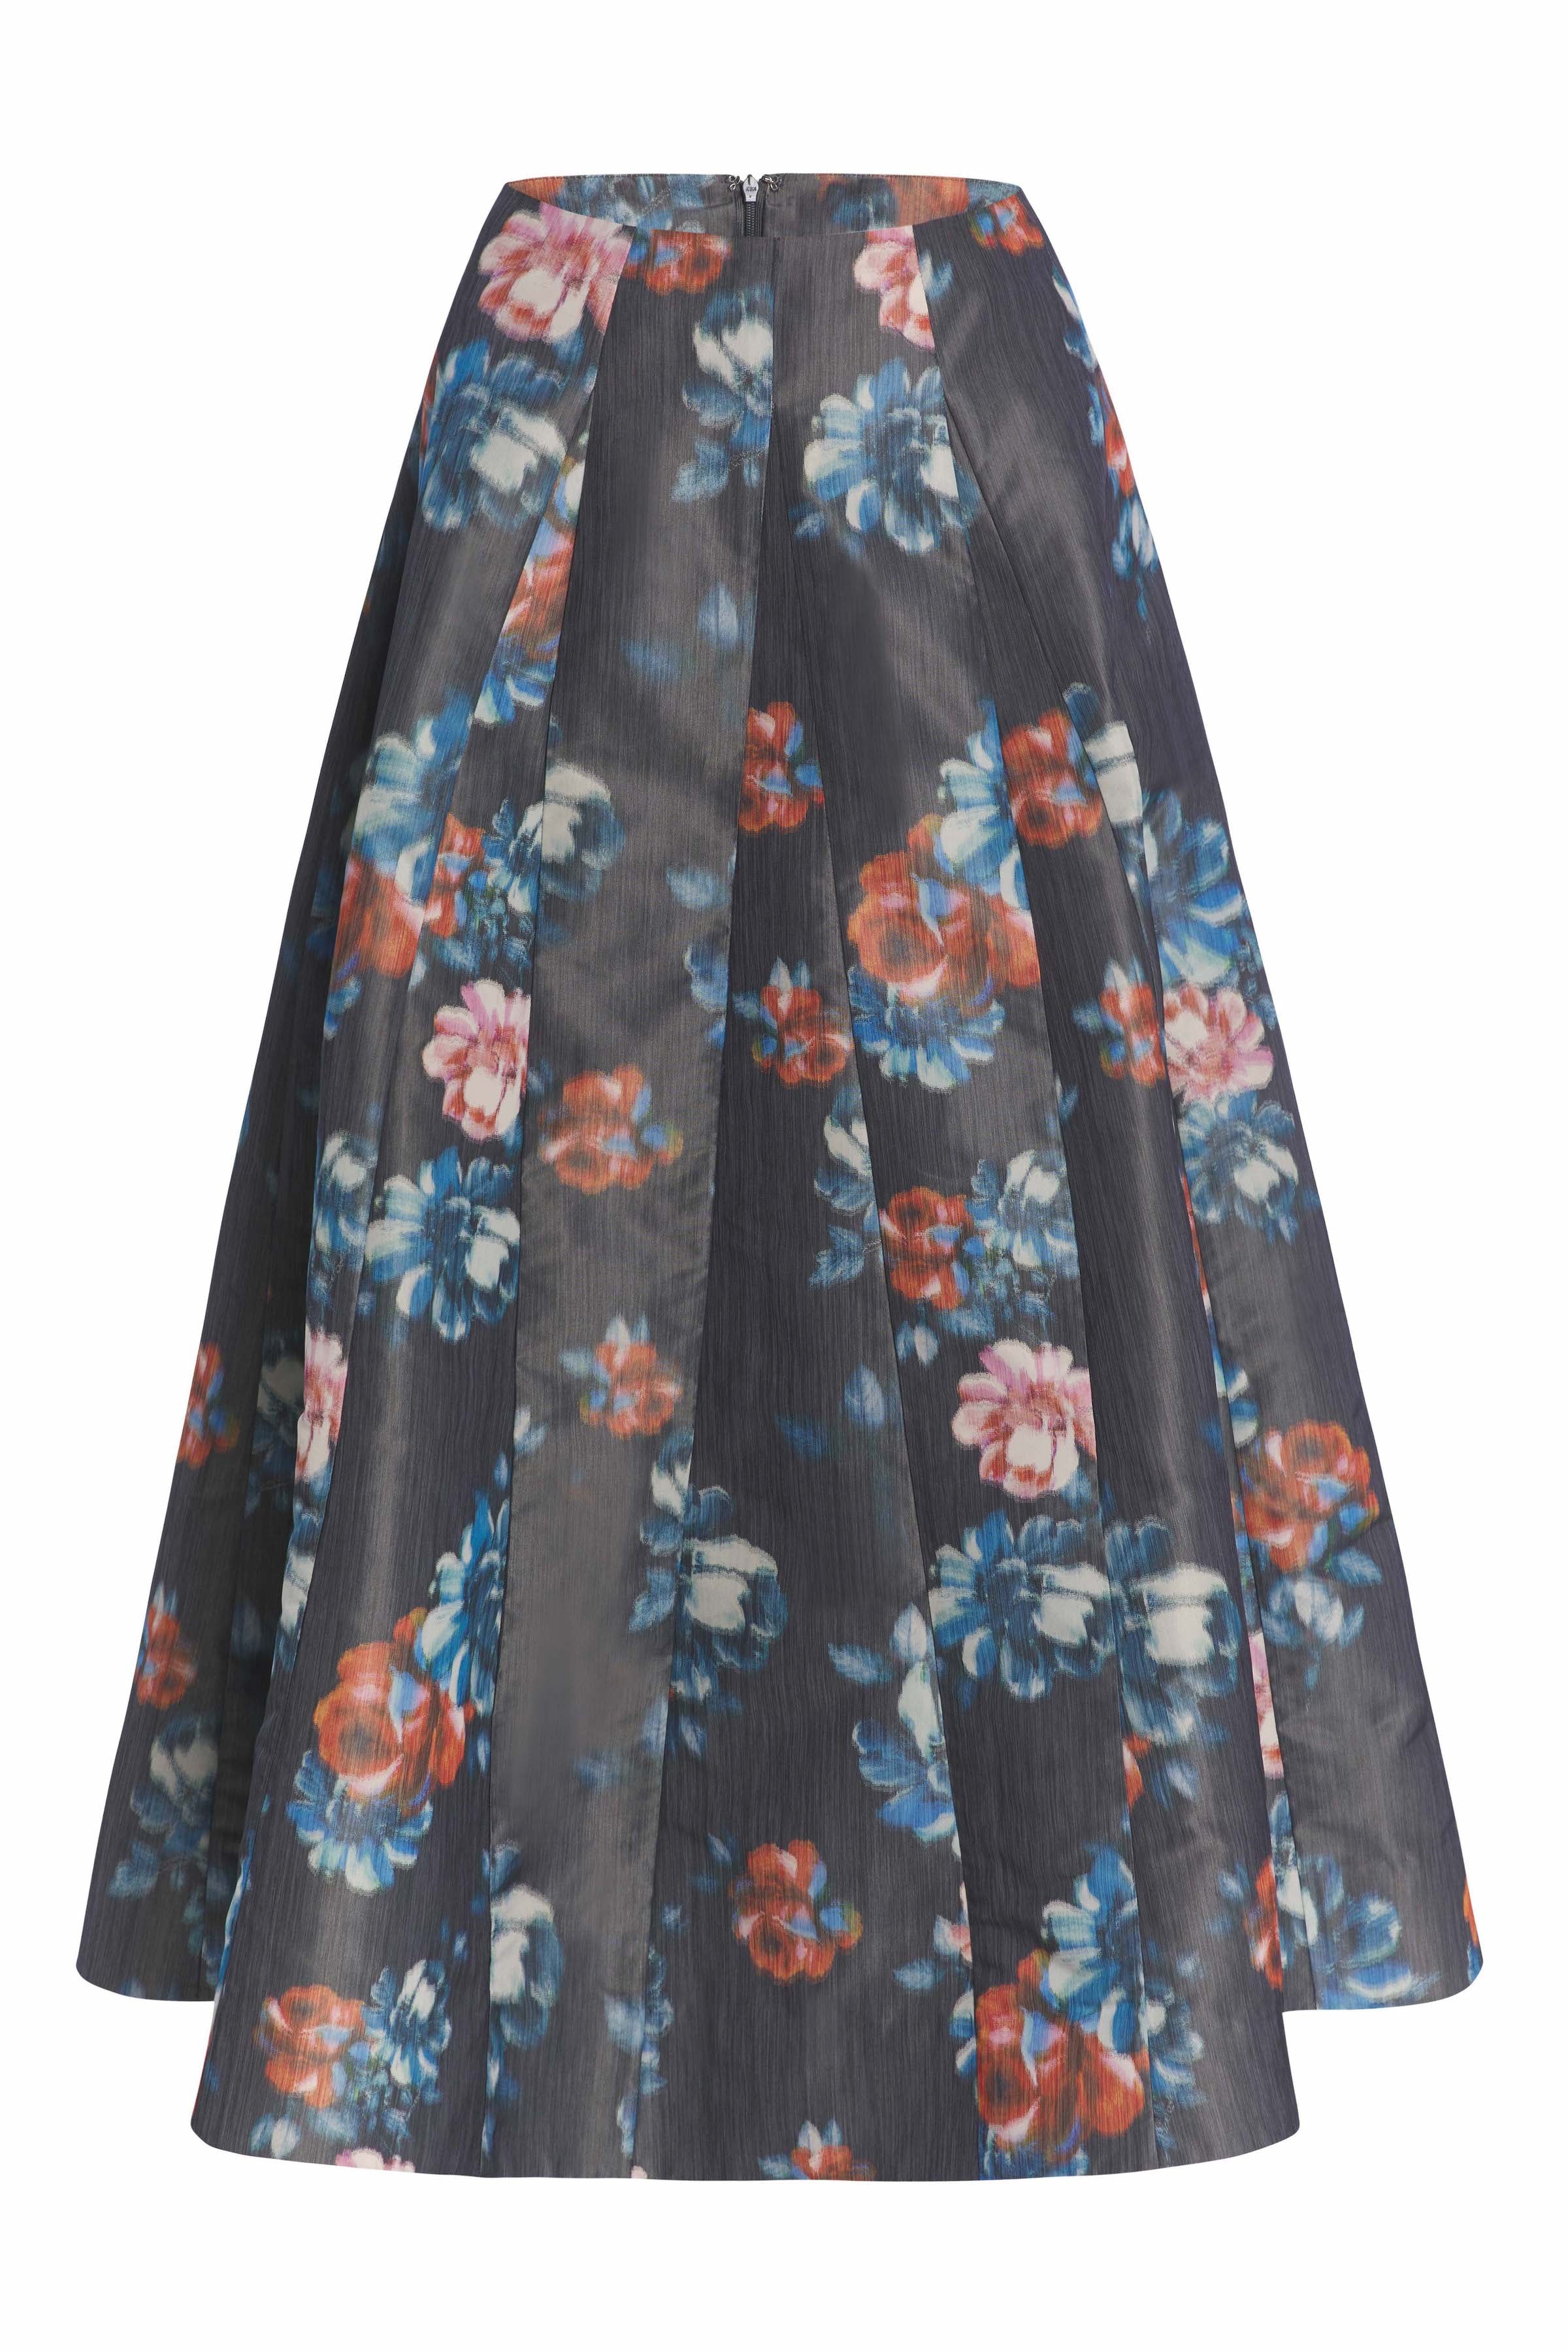 Marjorie Dark Floral Ikat Full Skirt